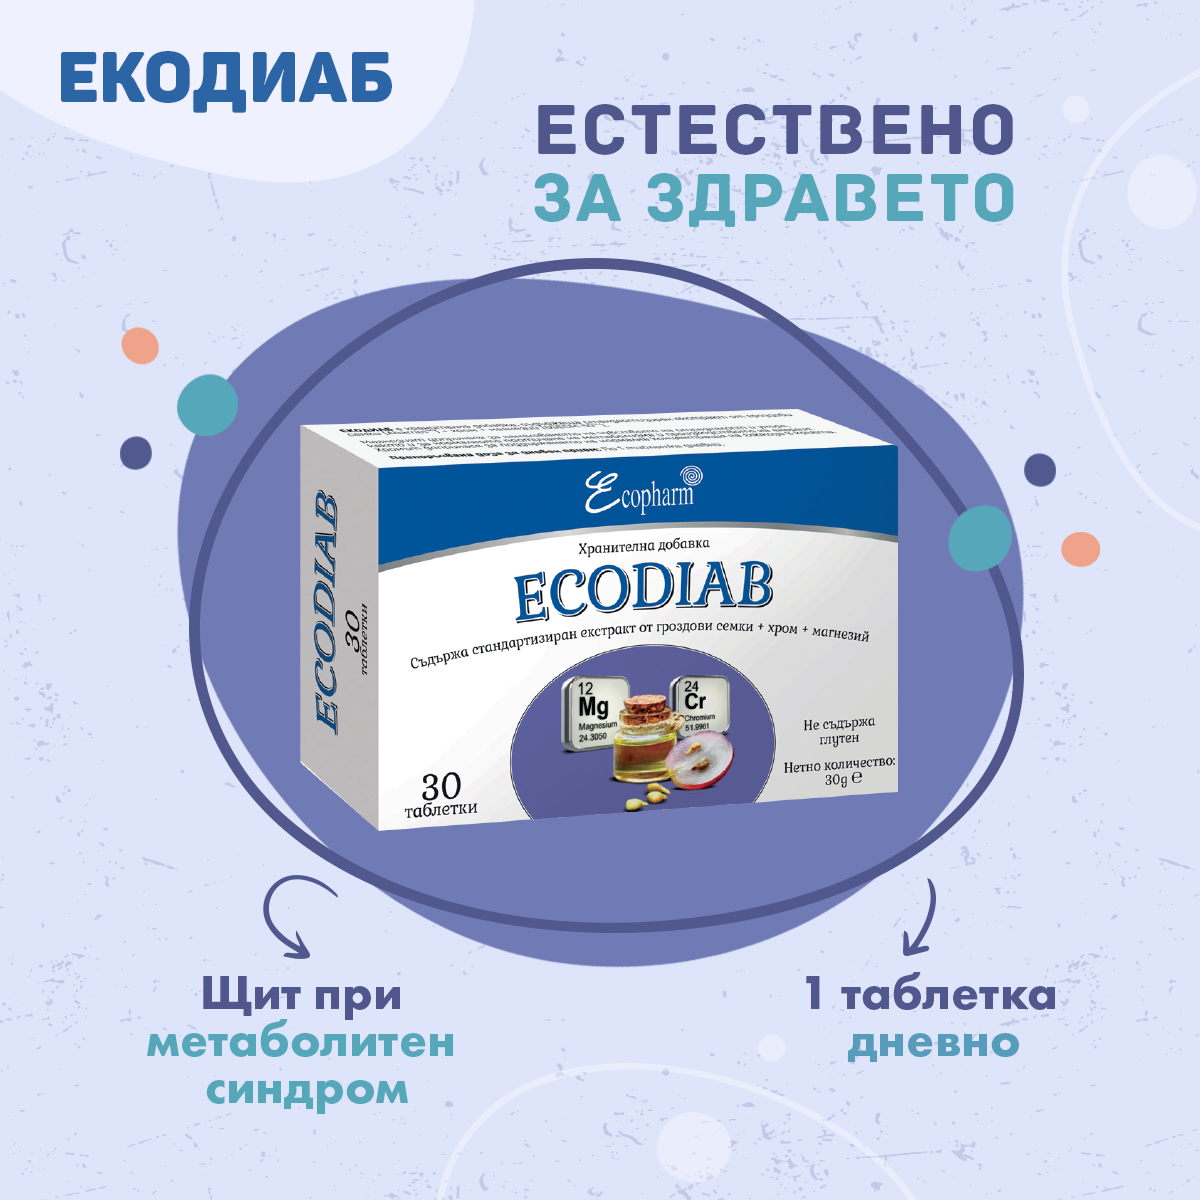 Екодиаб - хранителна добавка при метаболитен синдром